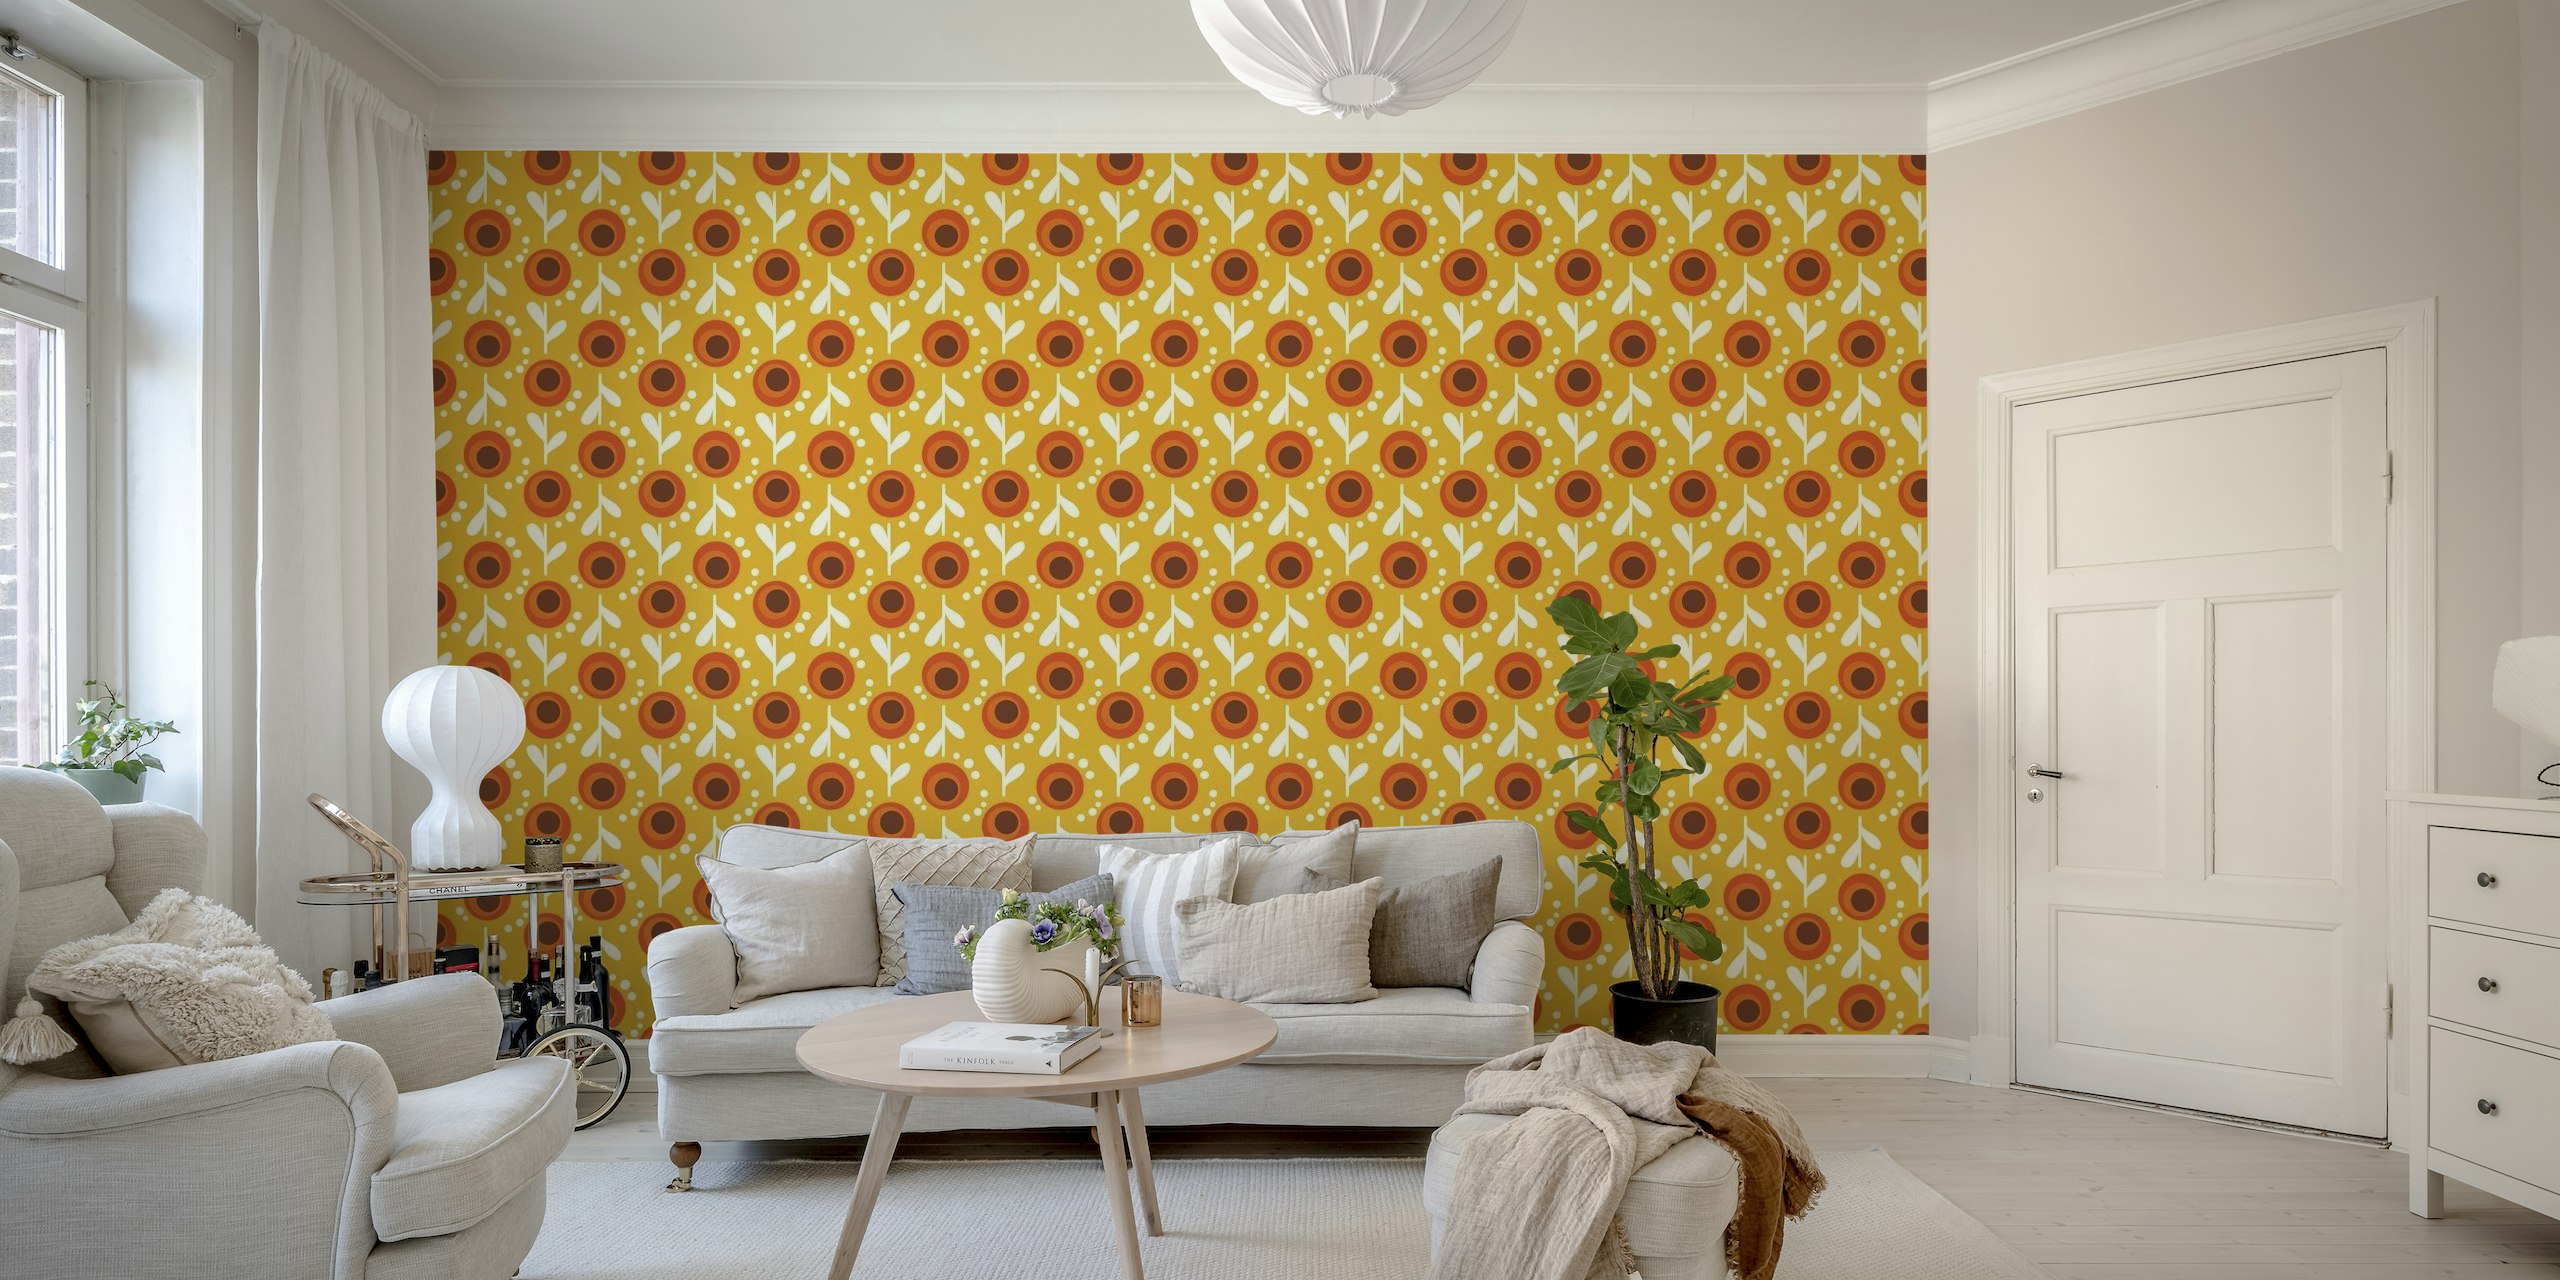 Papier peint mural « Retro Orange Floral » d'inspiration vintage avec des fleurs orange vif et des accents blancs sur fond jaune.